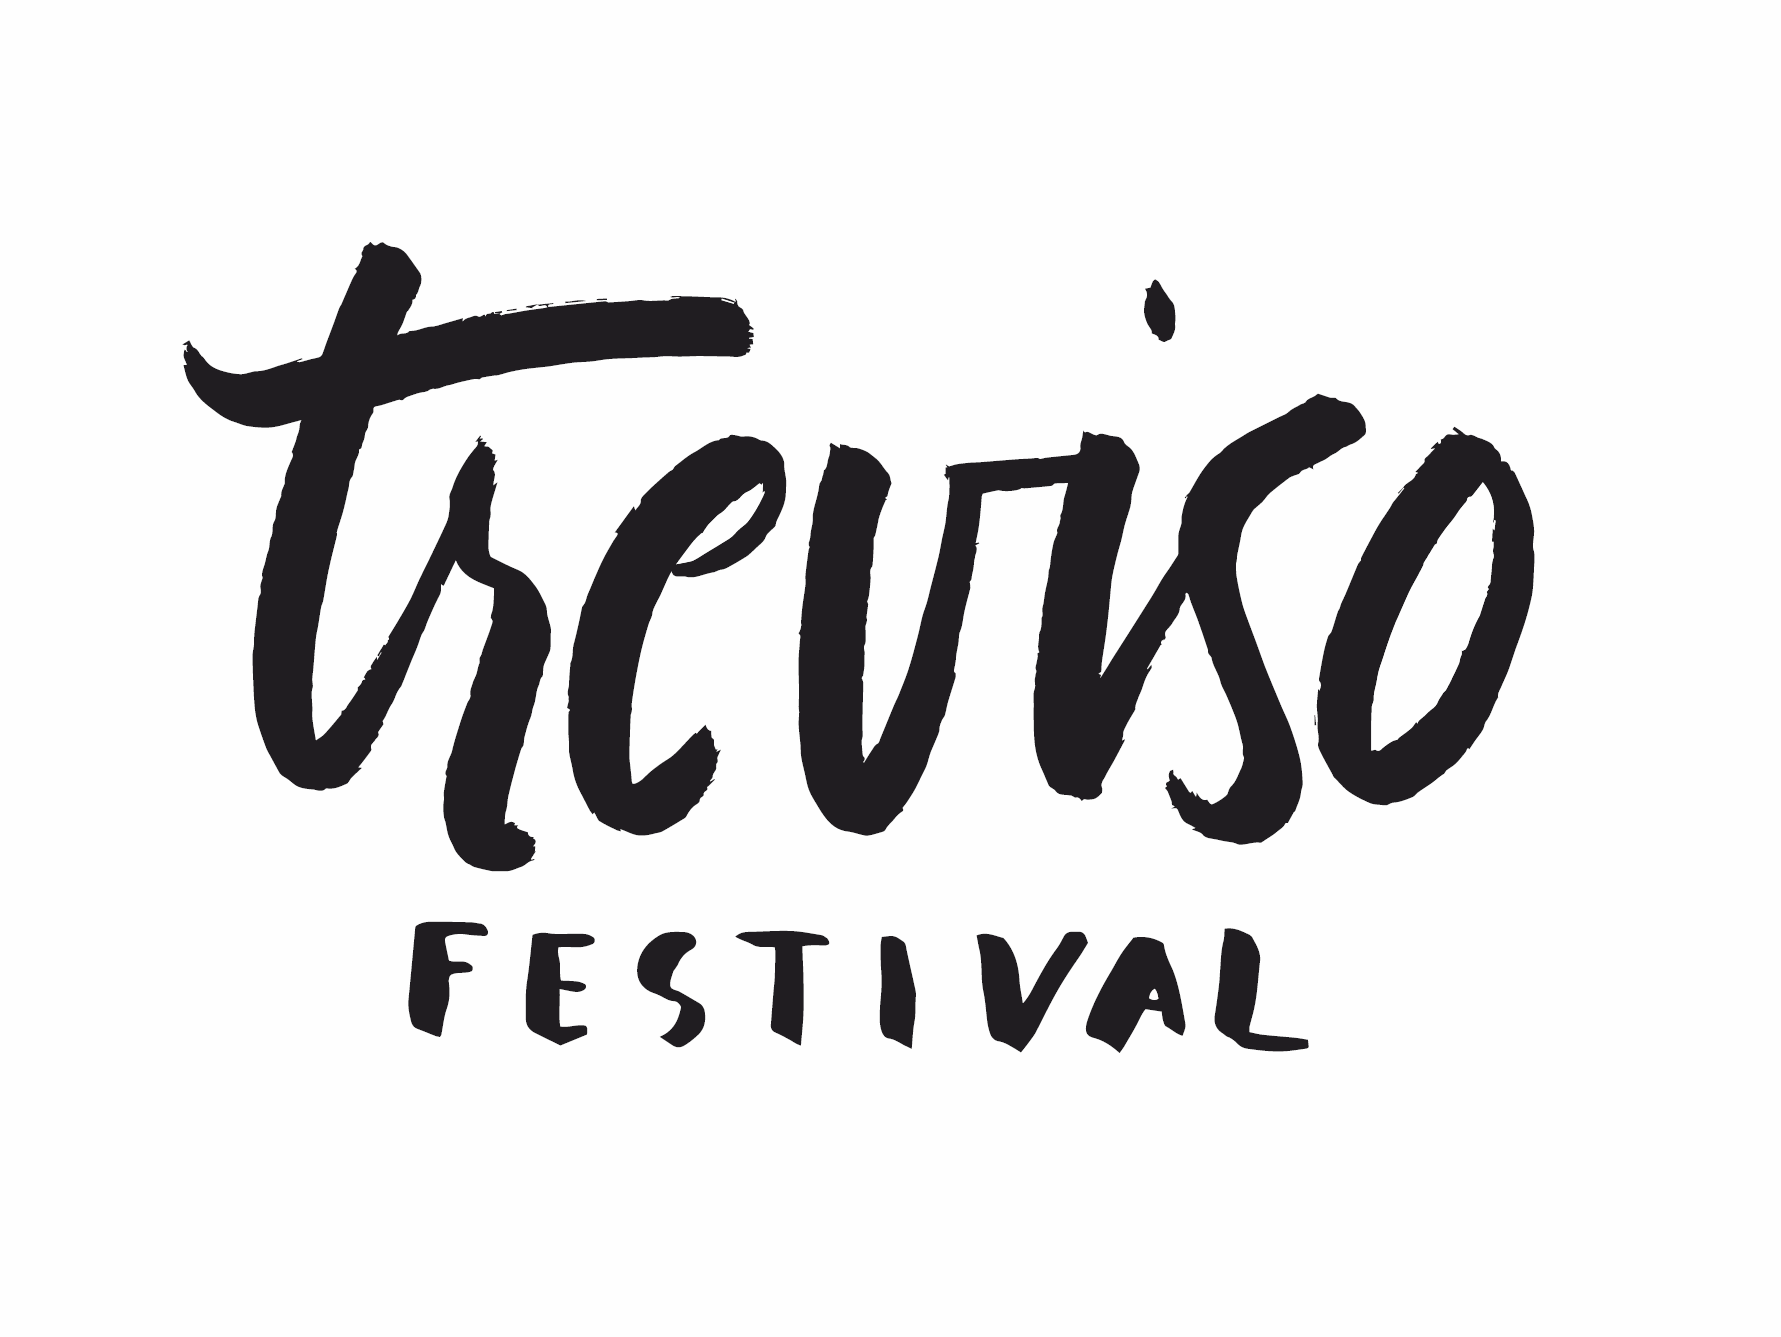 Treviso festival